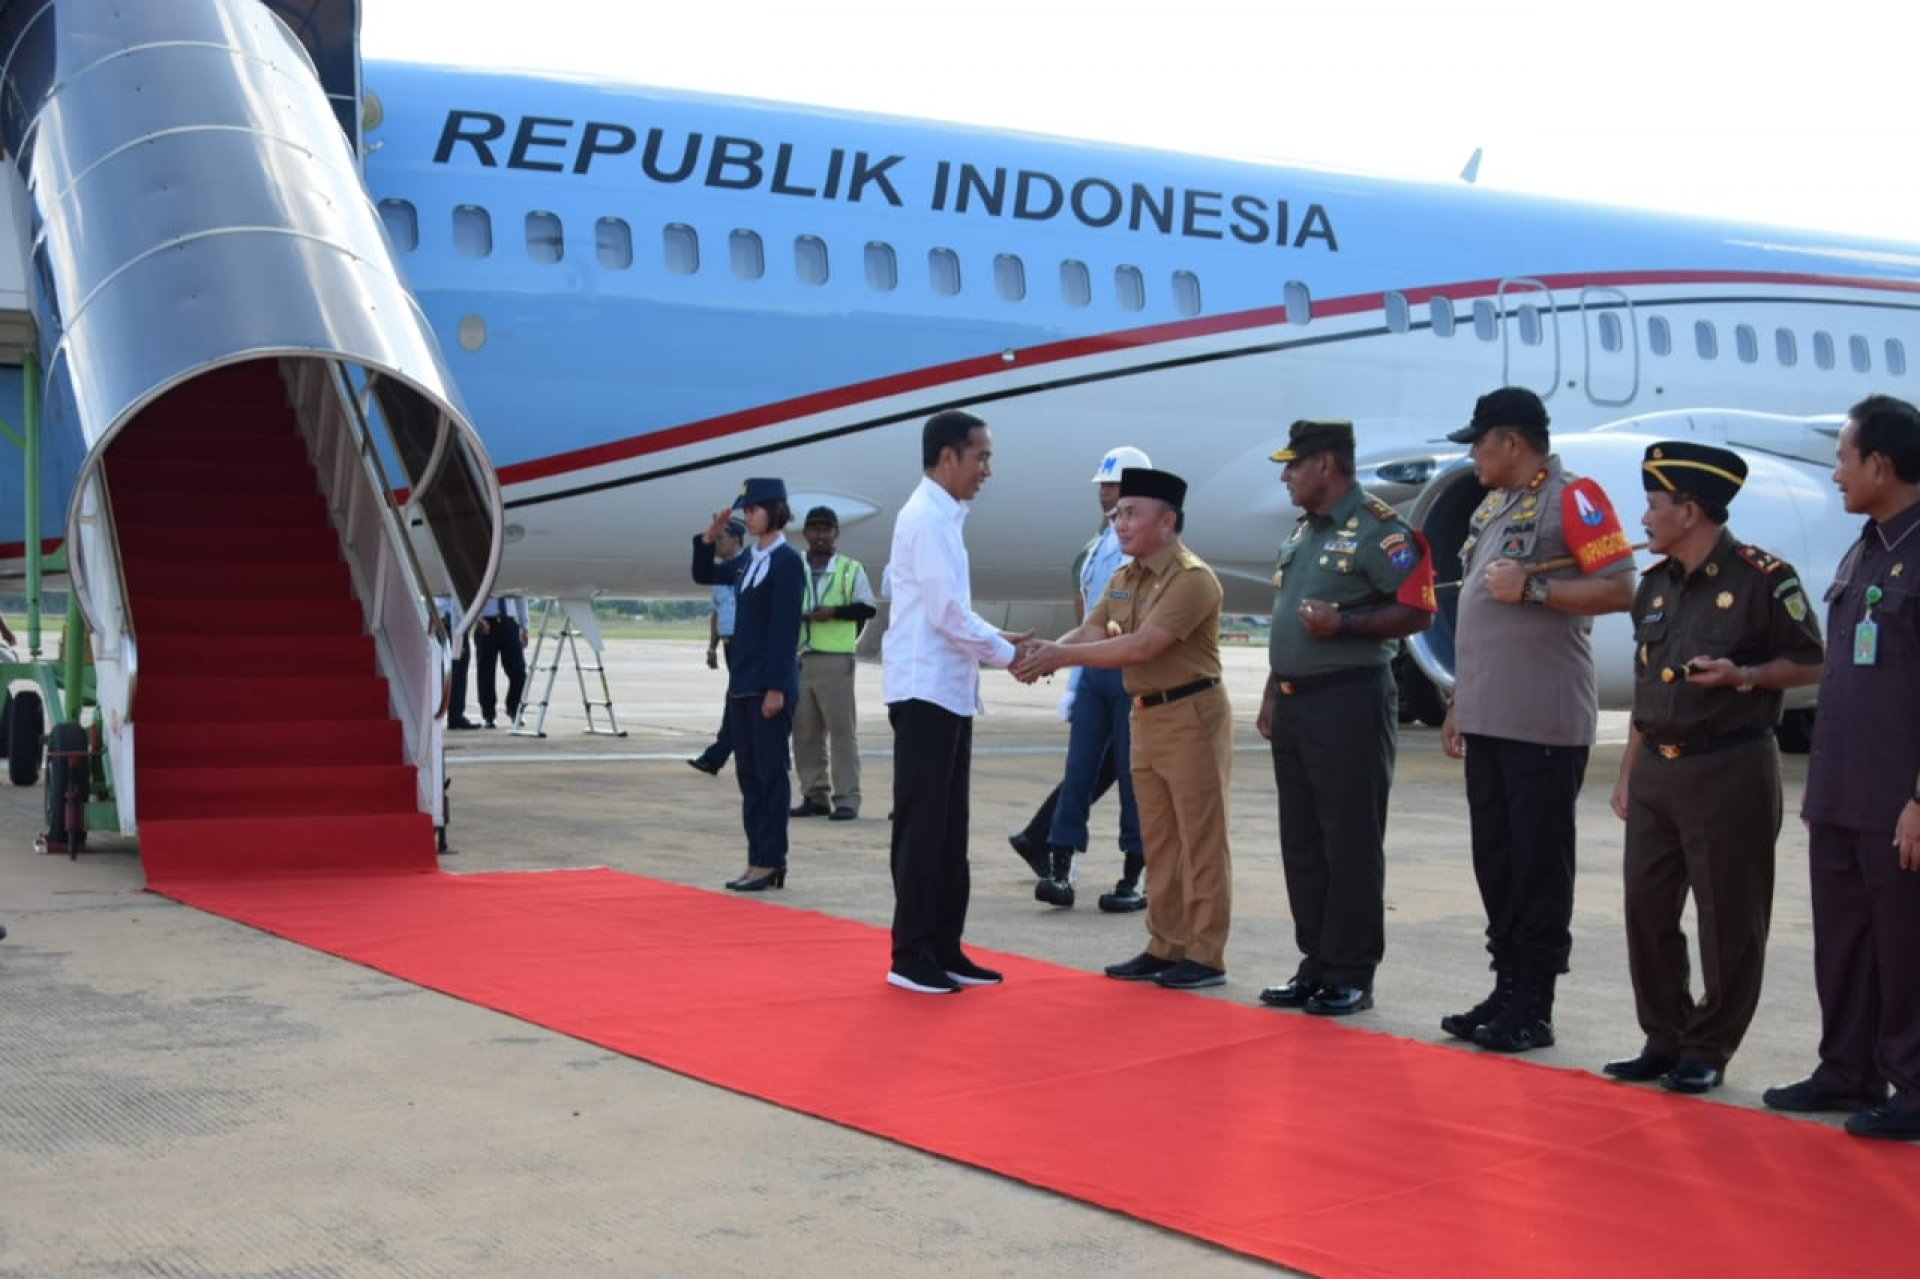 Kembali Kunjungi Kalteng, Presiden Jokowi Didampingi Gubernur Sugianto Lihat Lokasi Calon Ibukota